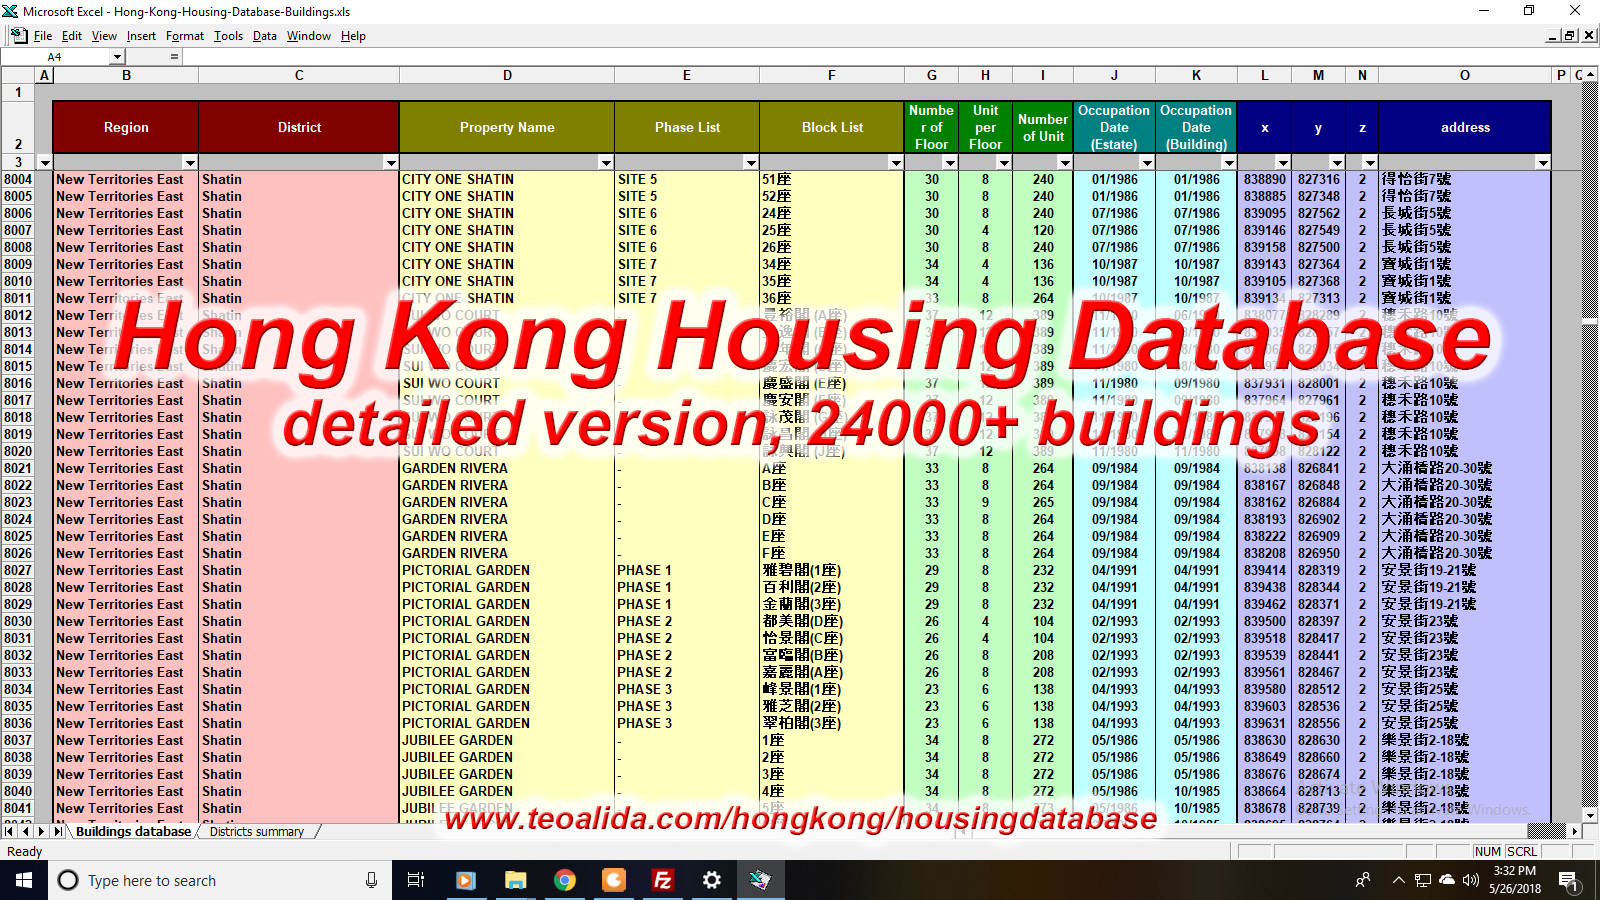 Hong Kong Housing Database